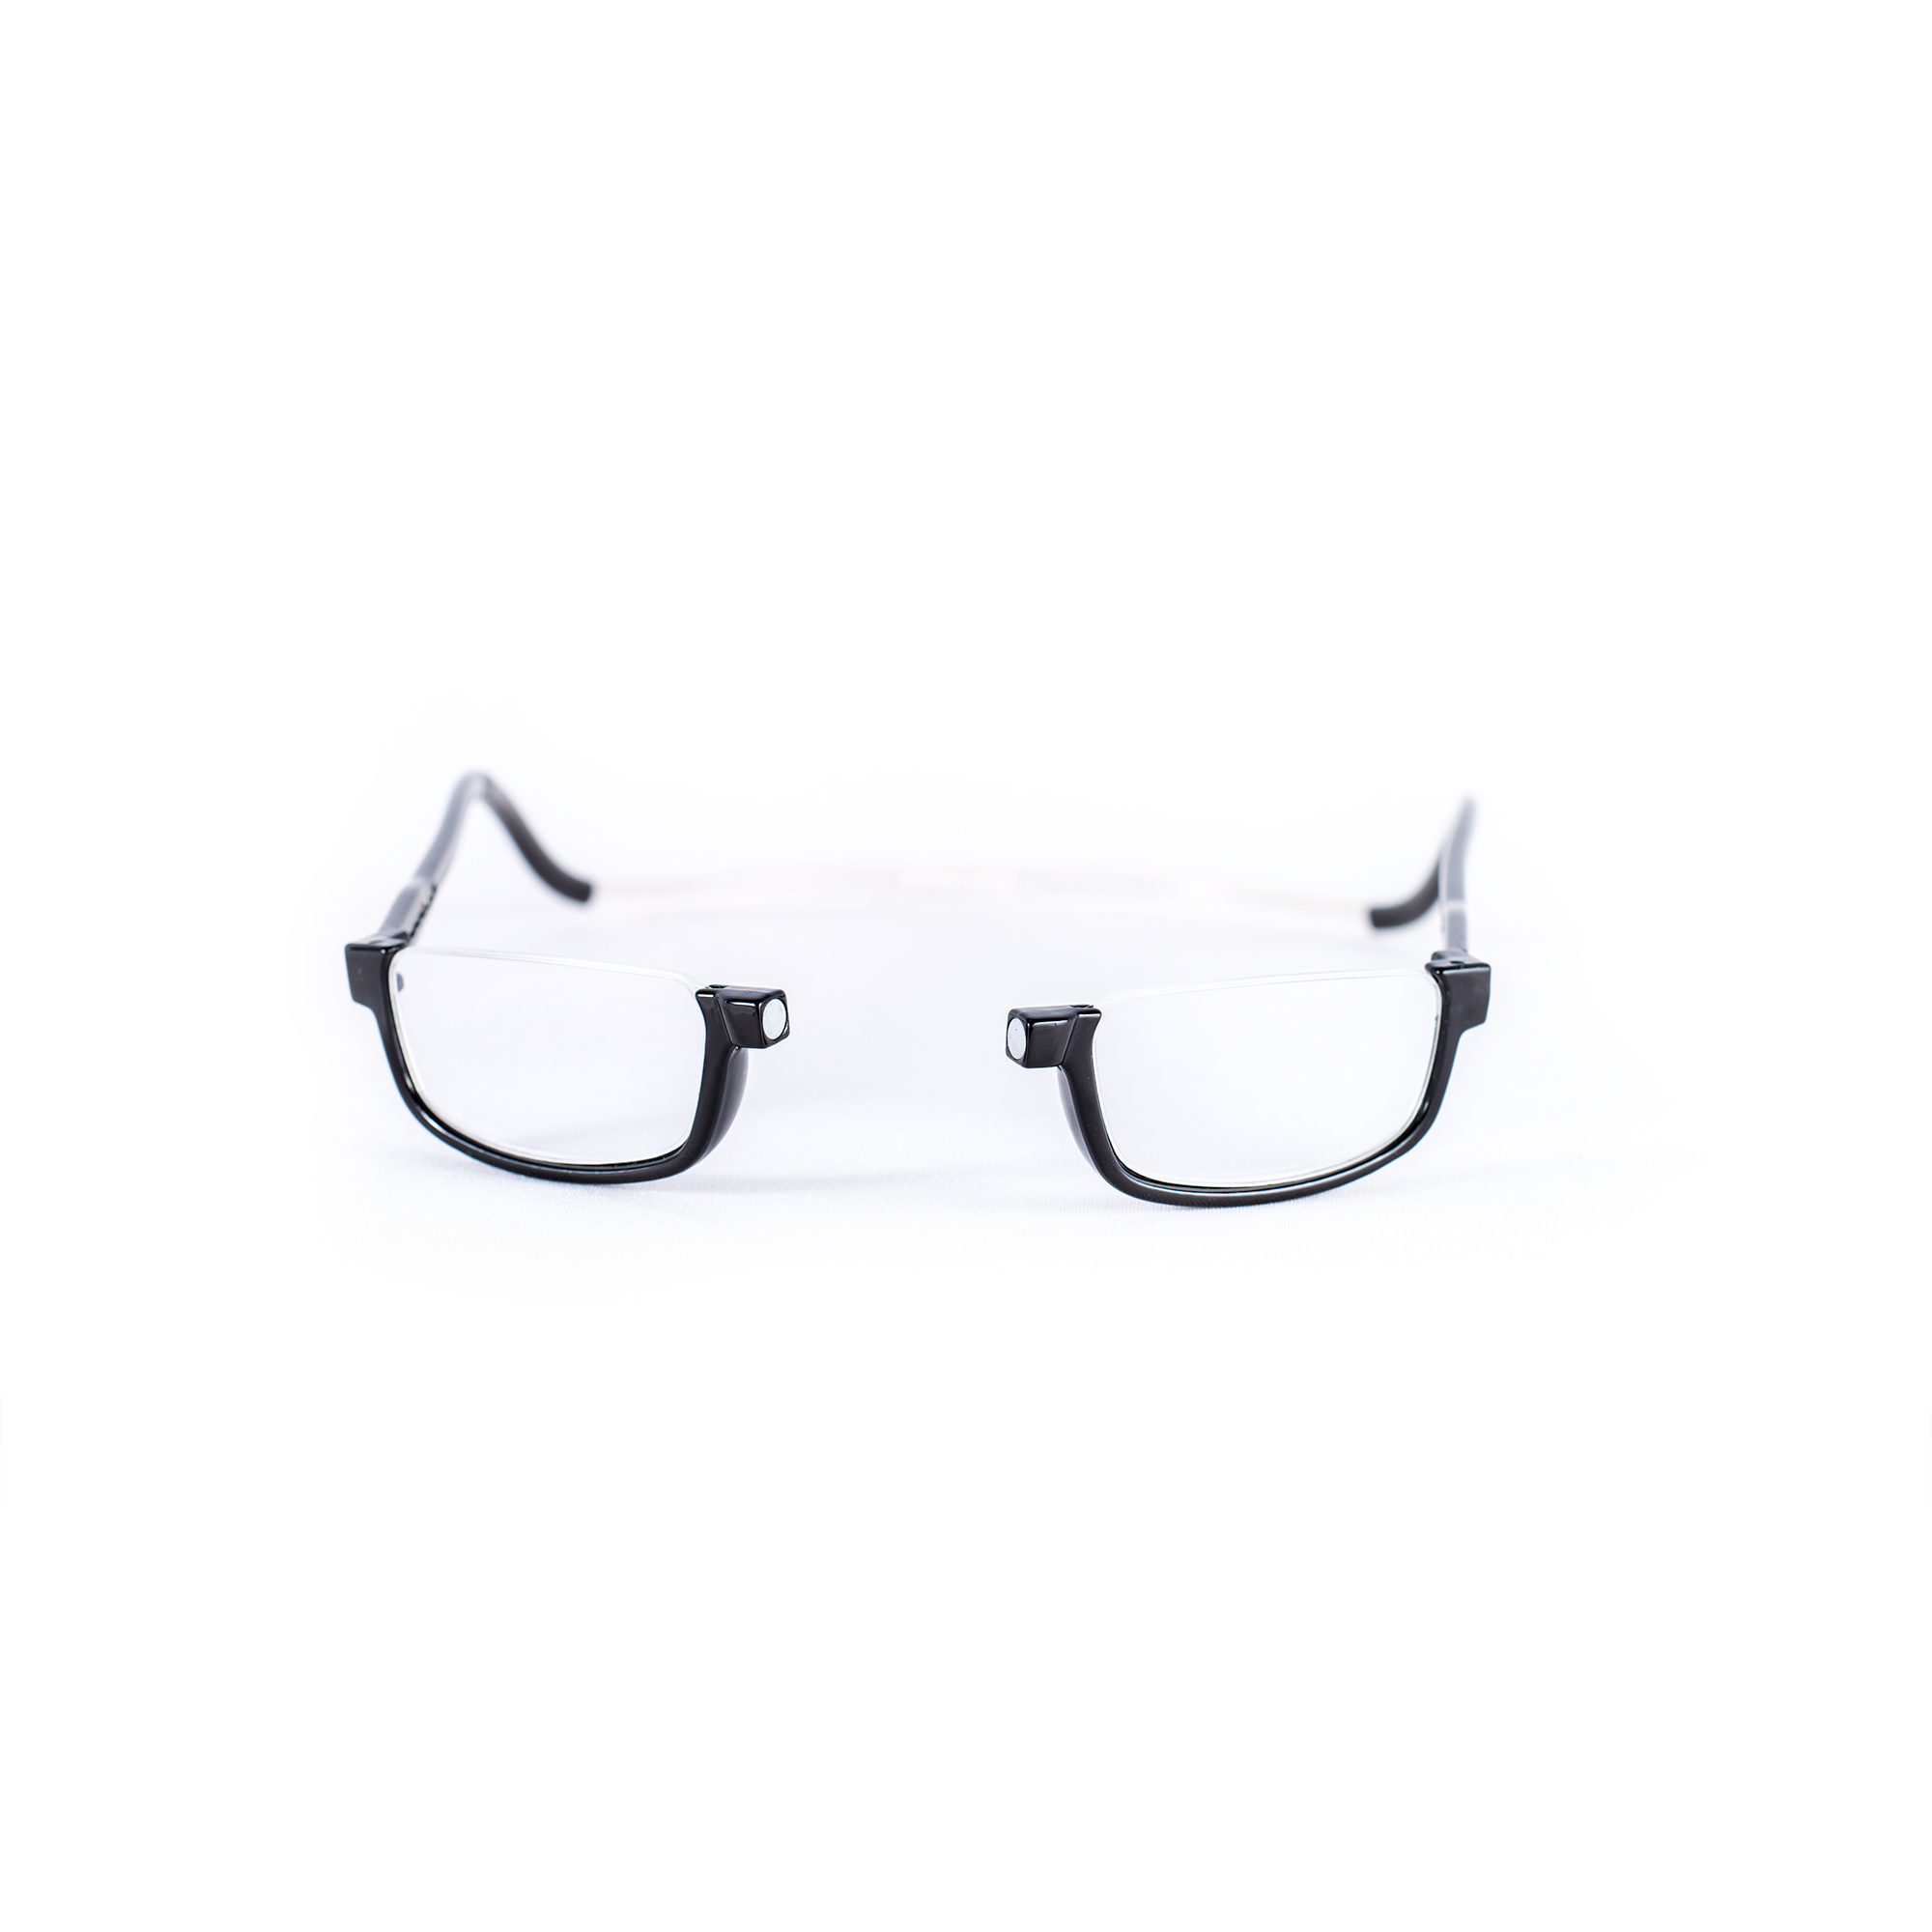 Easy Reader magneetleesbril leesbril met magneetsluiting halfrond zwart